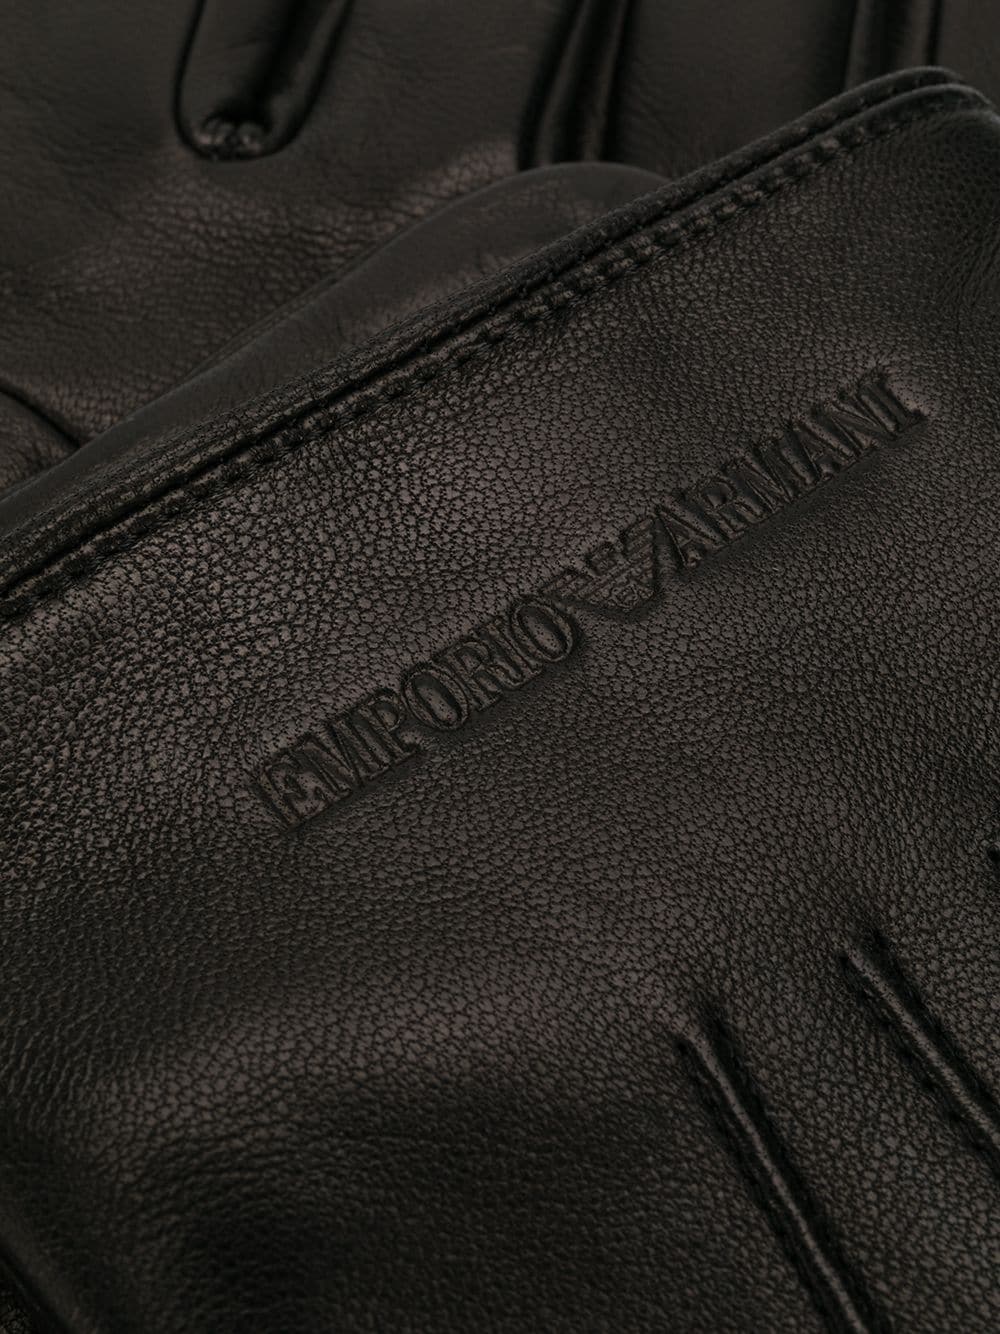 фото Emporio armani перчатки с гравировкой логотипа